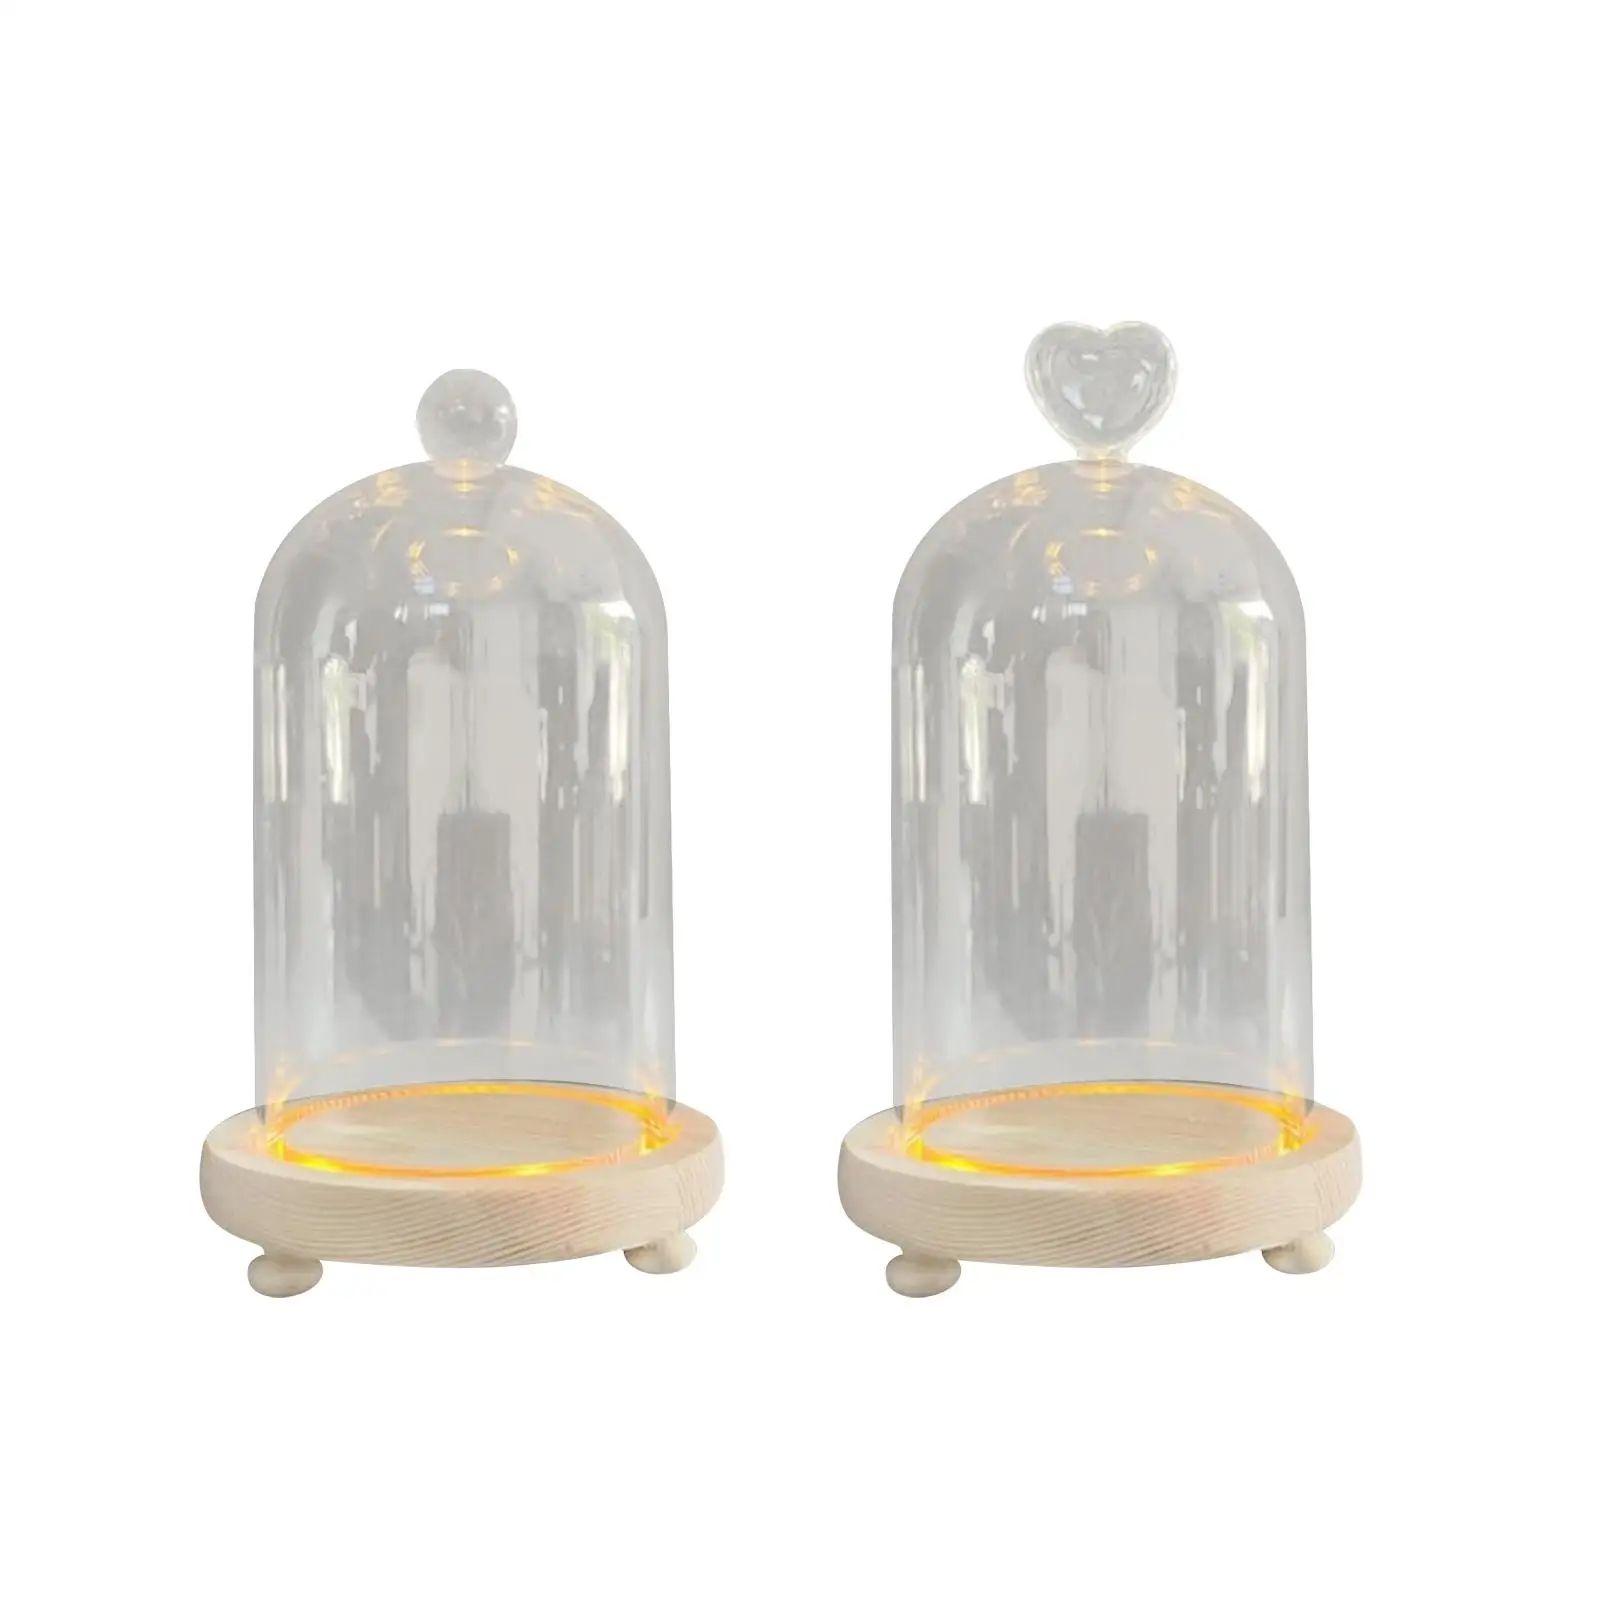 Glass Cloche Dome Cloche Dome Bell Jar Display Case Nordic Valentine`s Day